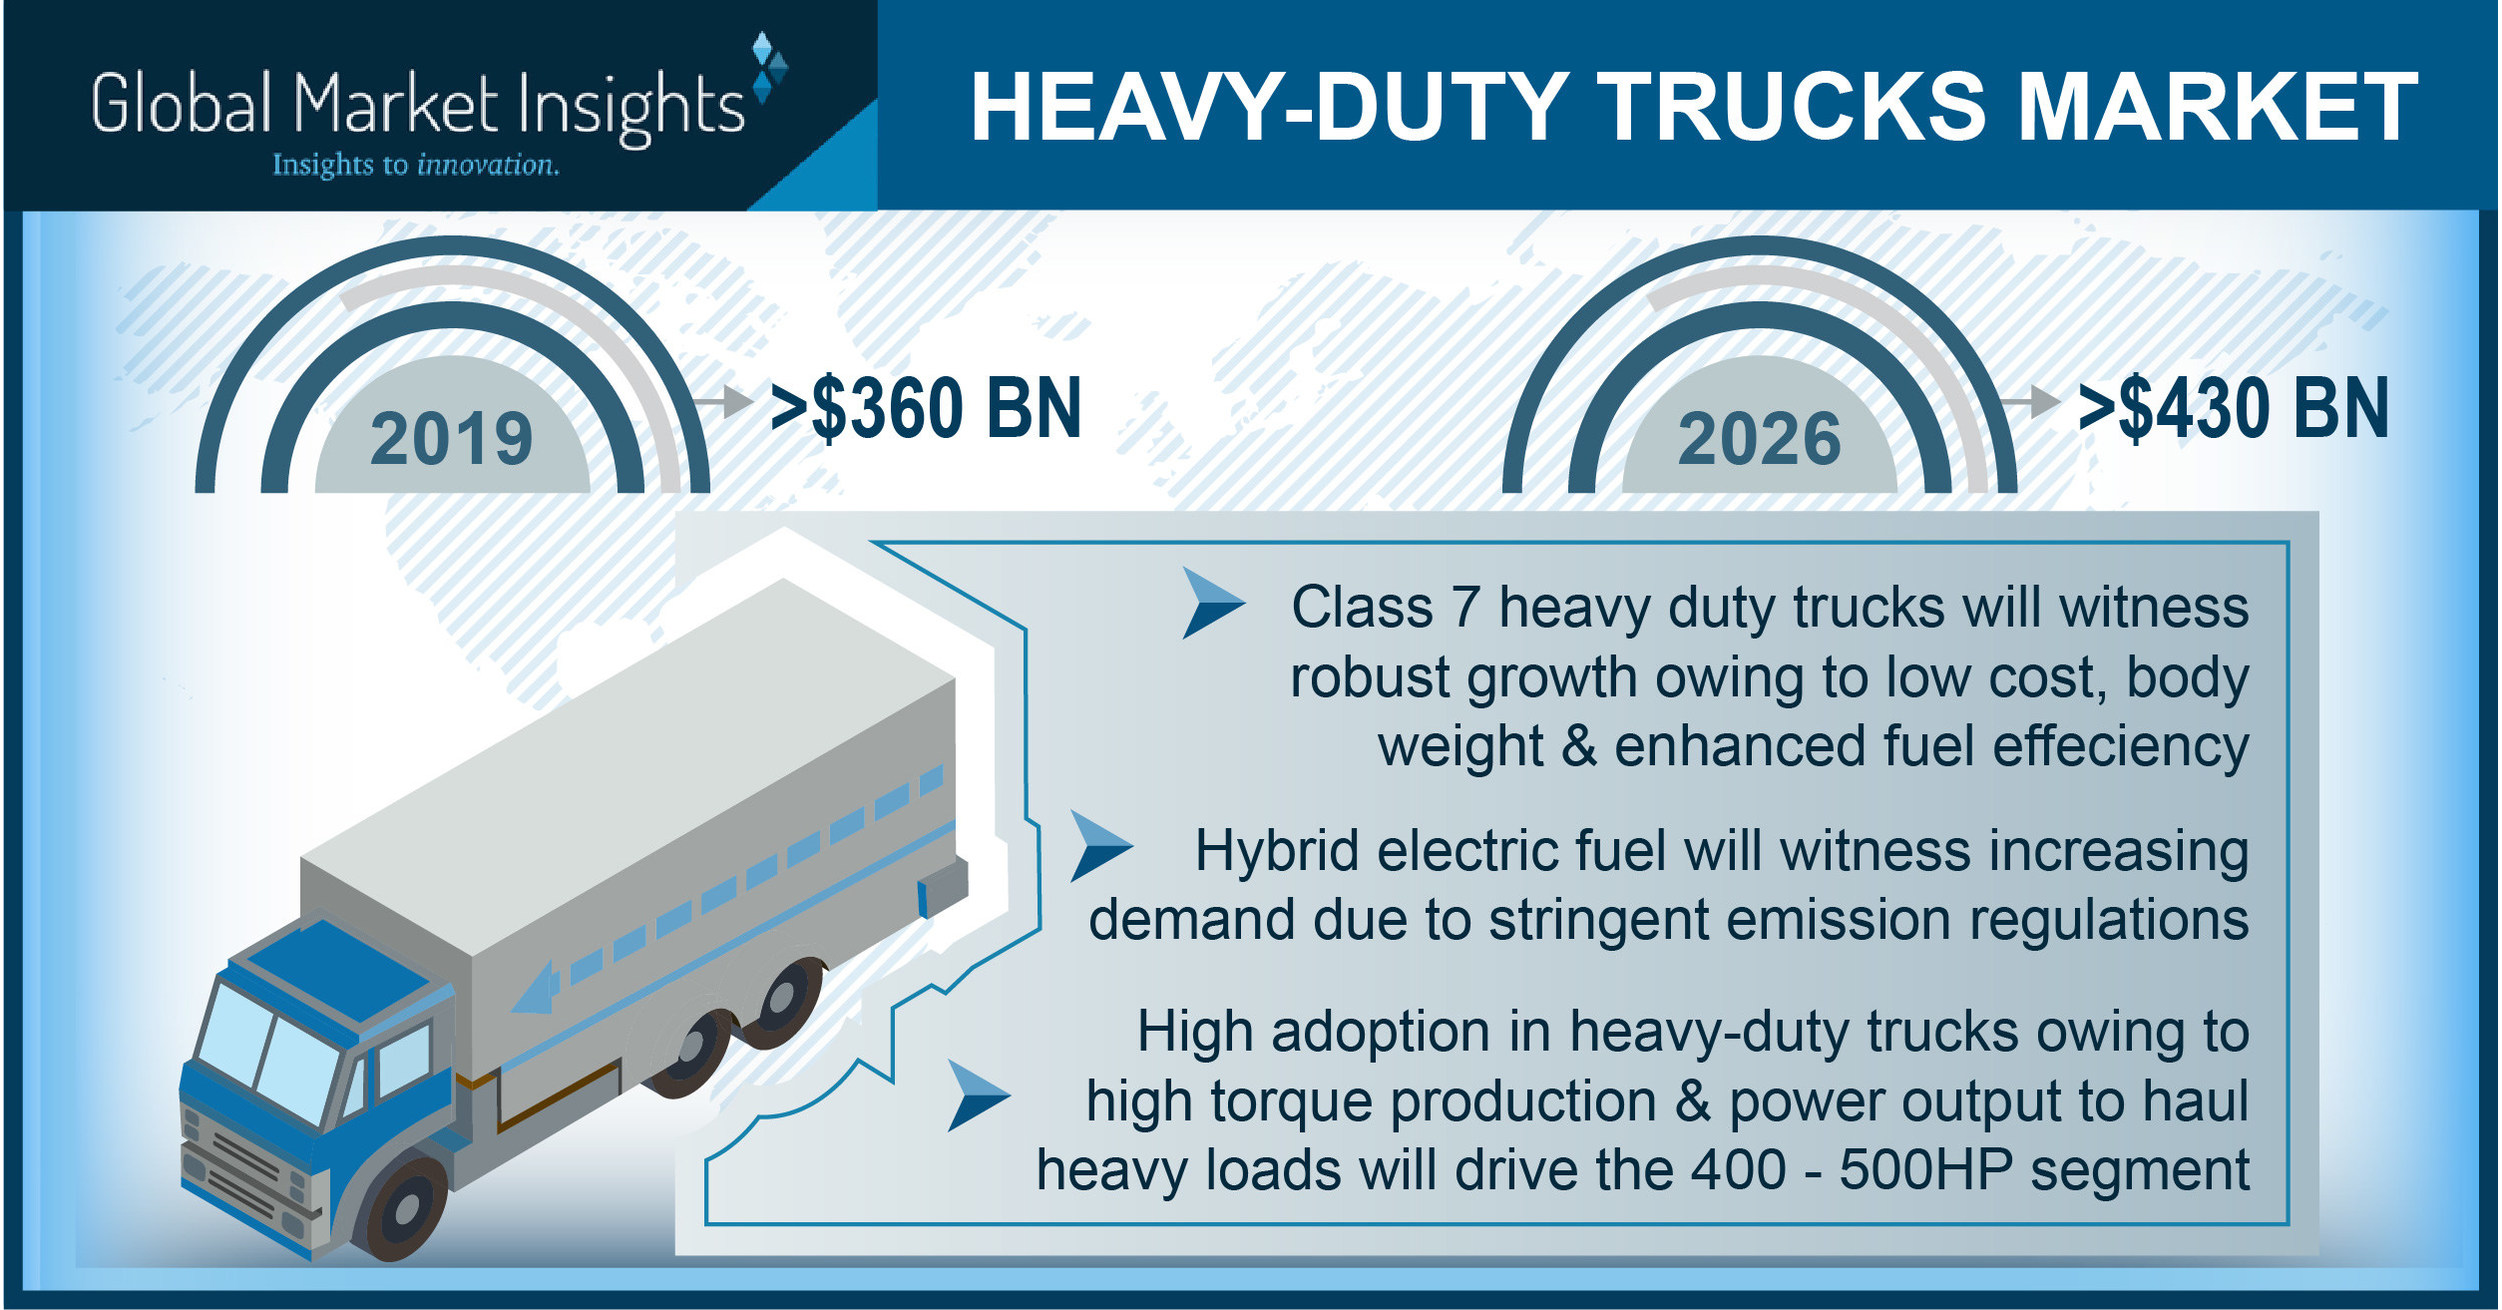 HeavyDuty Trucks Market to Hit USD 430 Bn by 2026; Global Market